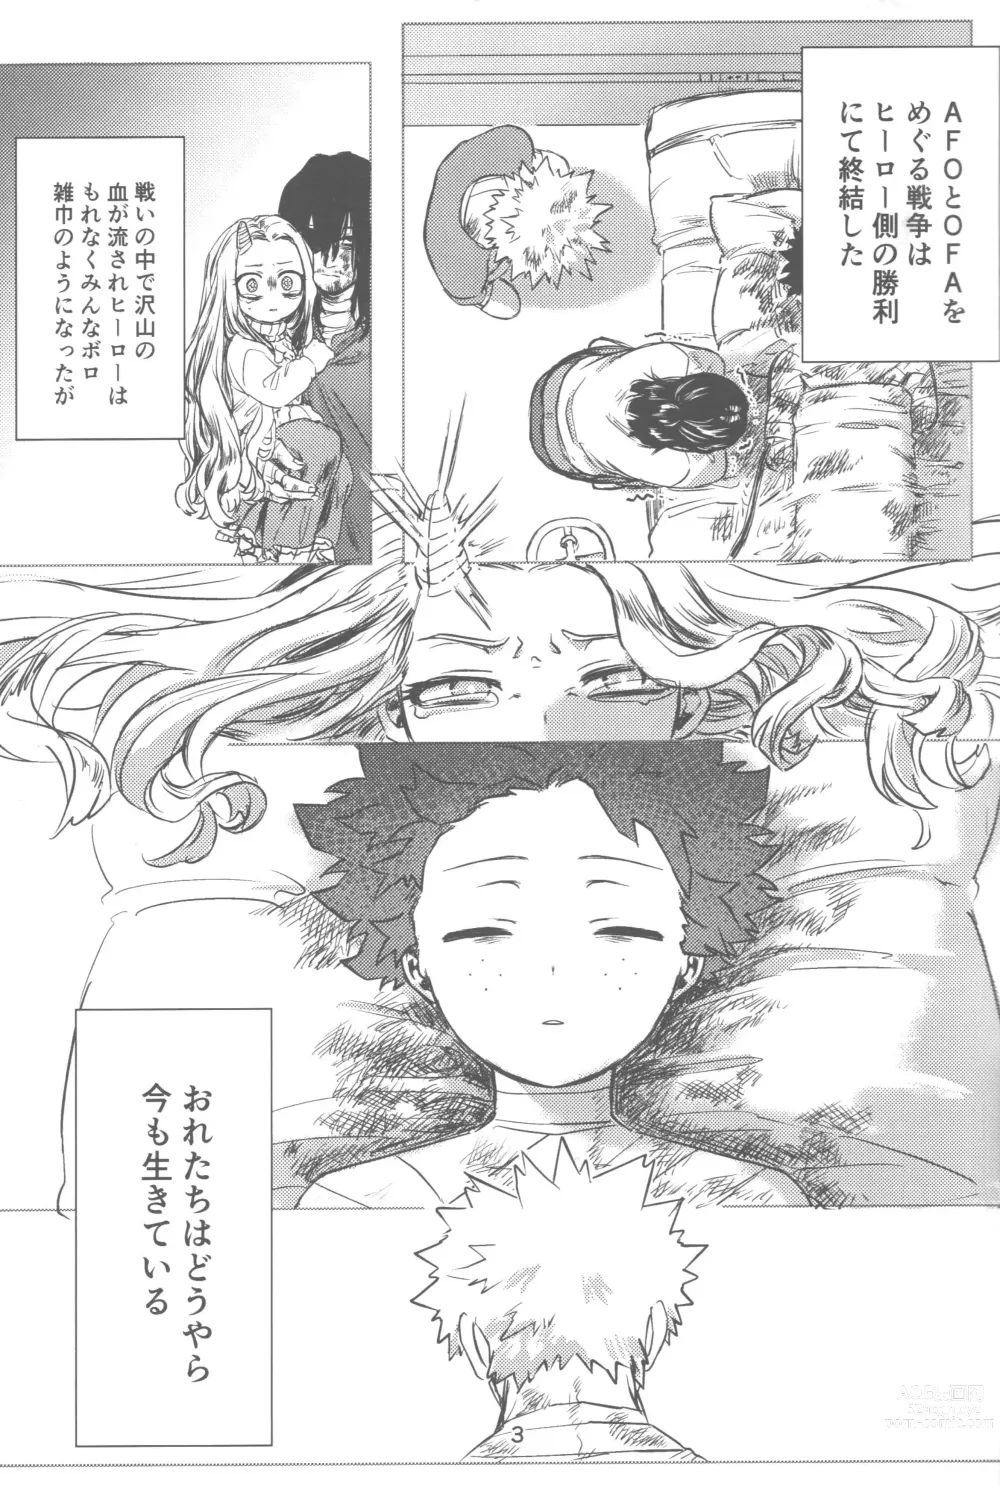 Page 4 of doujinshi Ore to Omae no Hajimete Monogatari